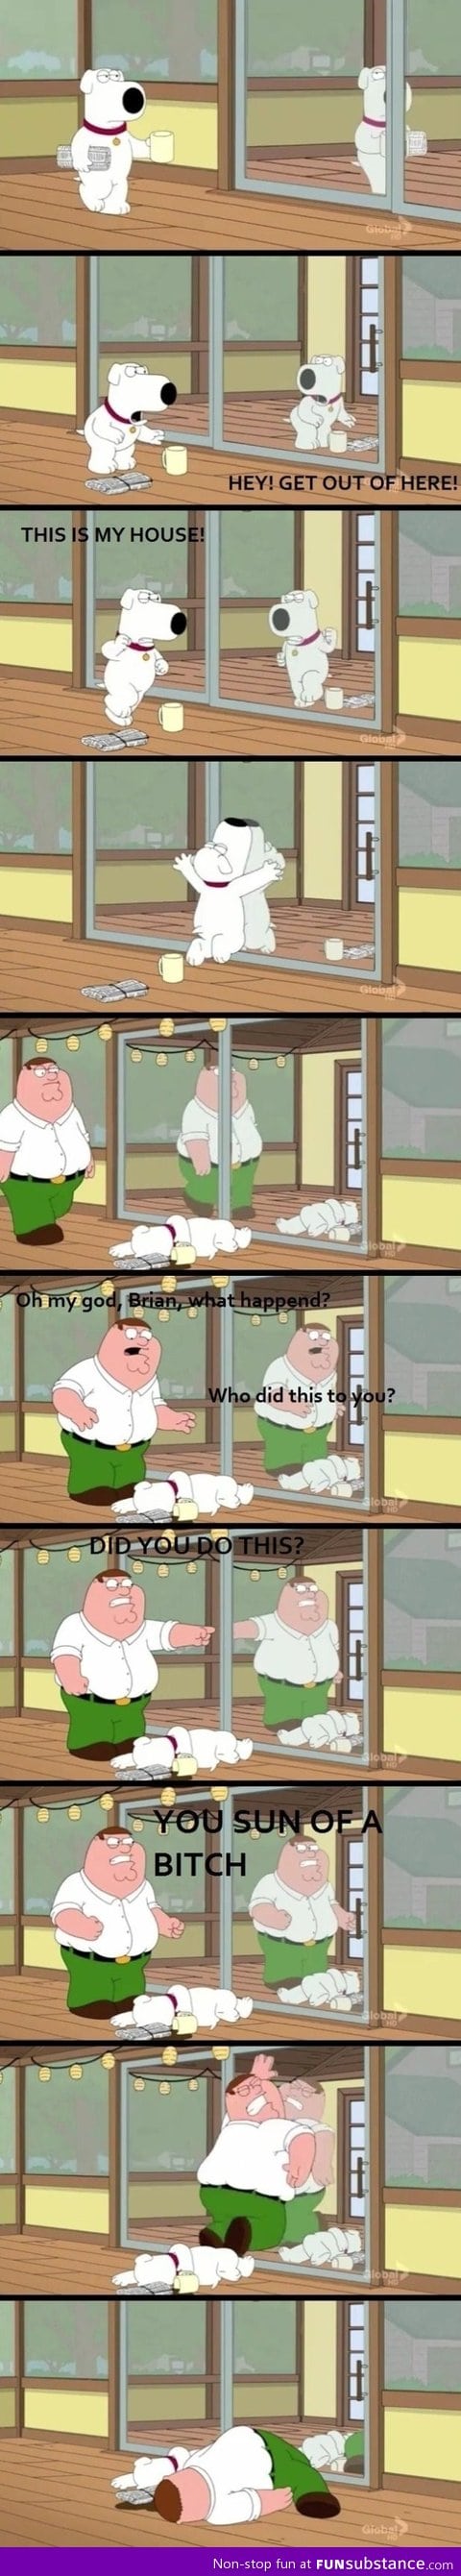 More Family Guy